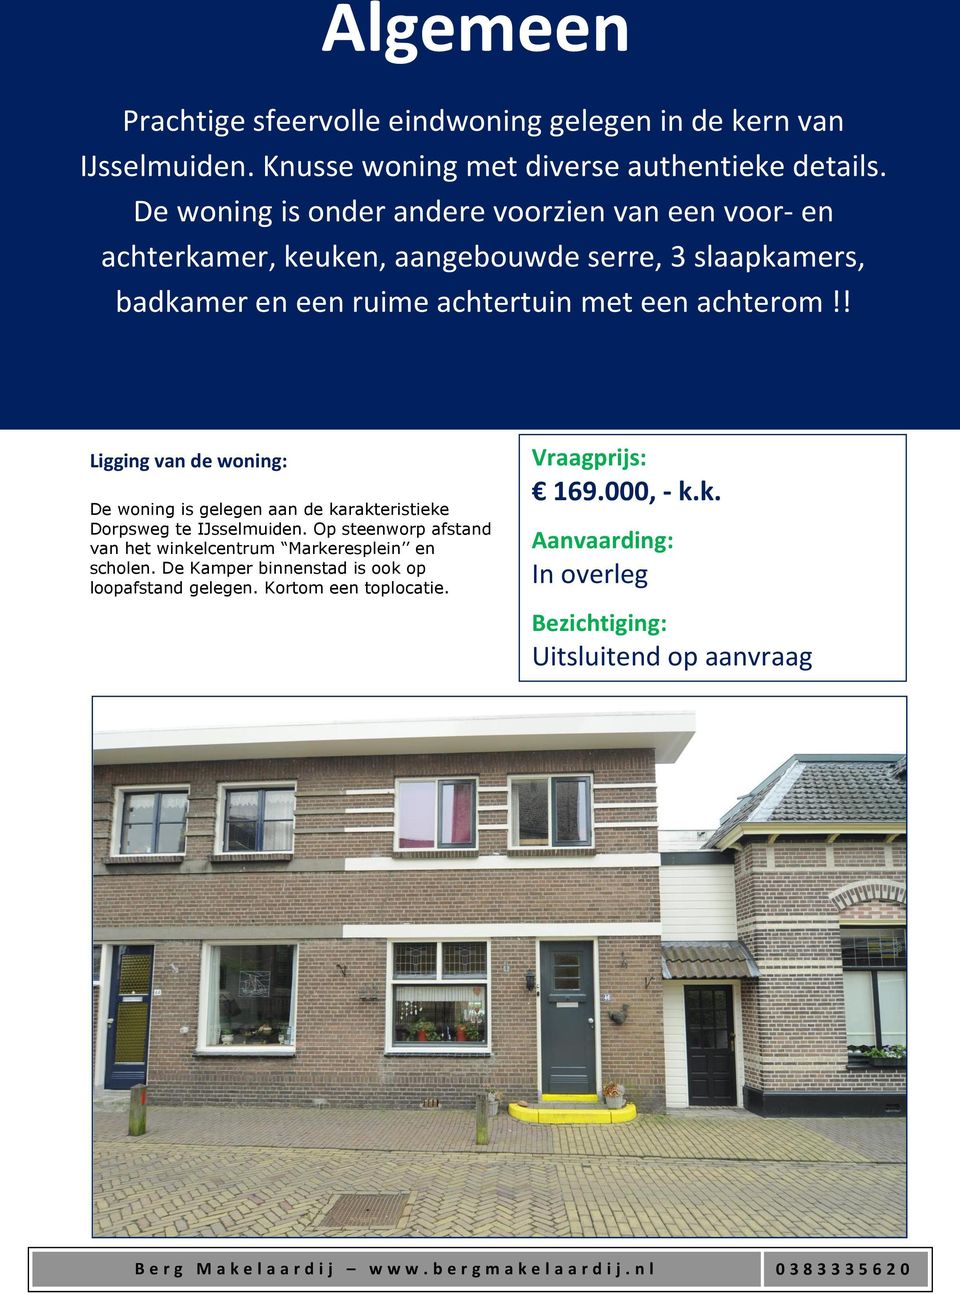 achterom!! Ligging van de woning: De woning is gelegen aan de karakteristieke Dorpsweg te IJsselmuiden.